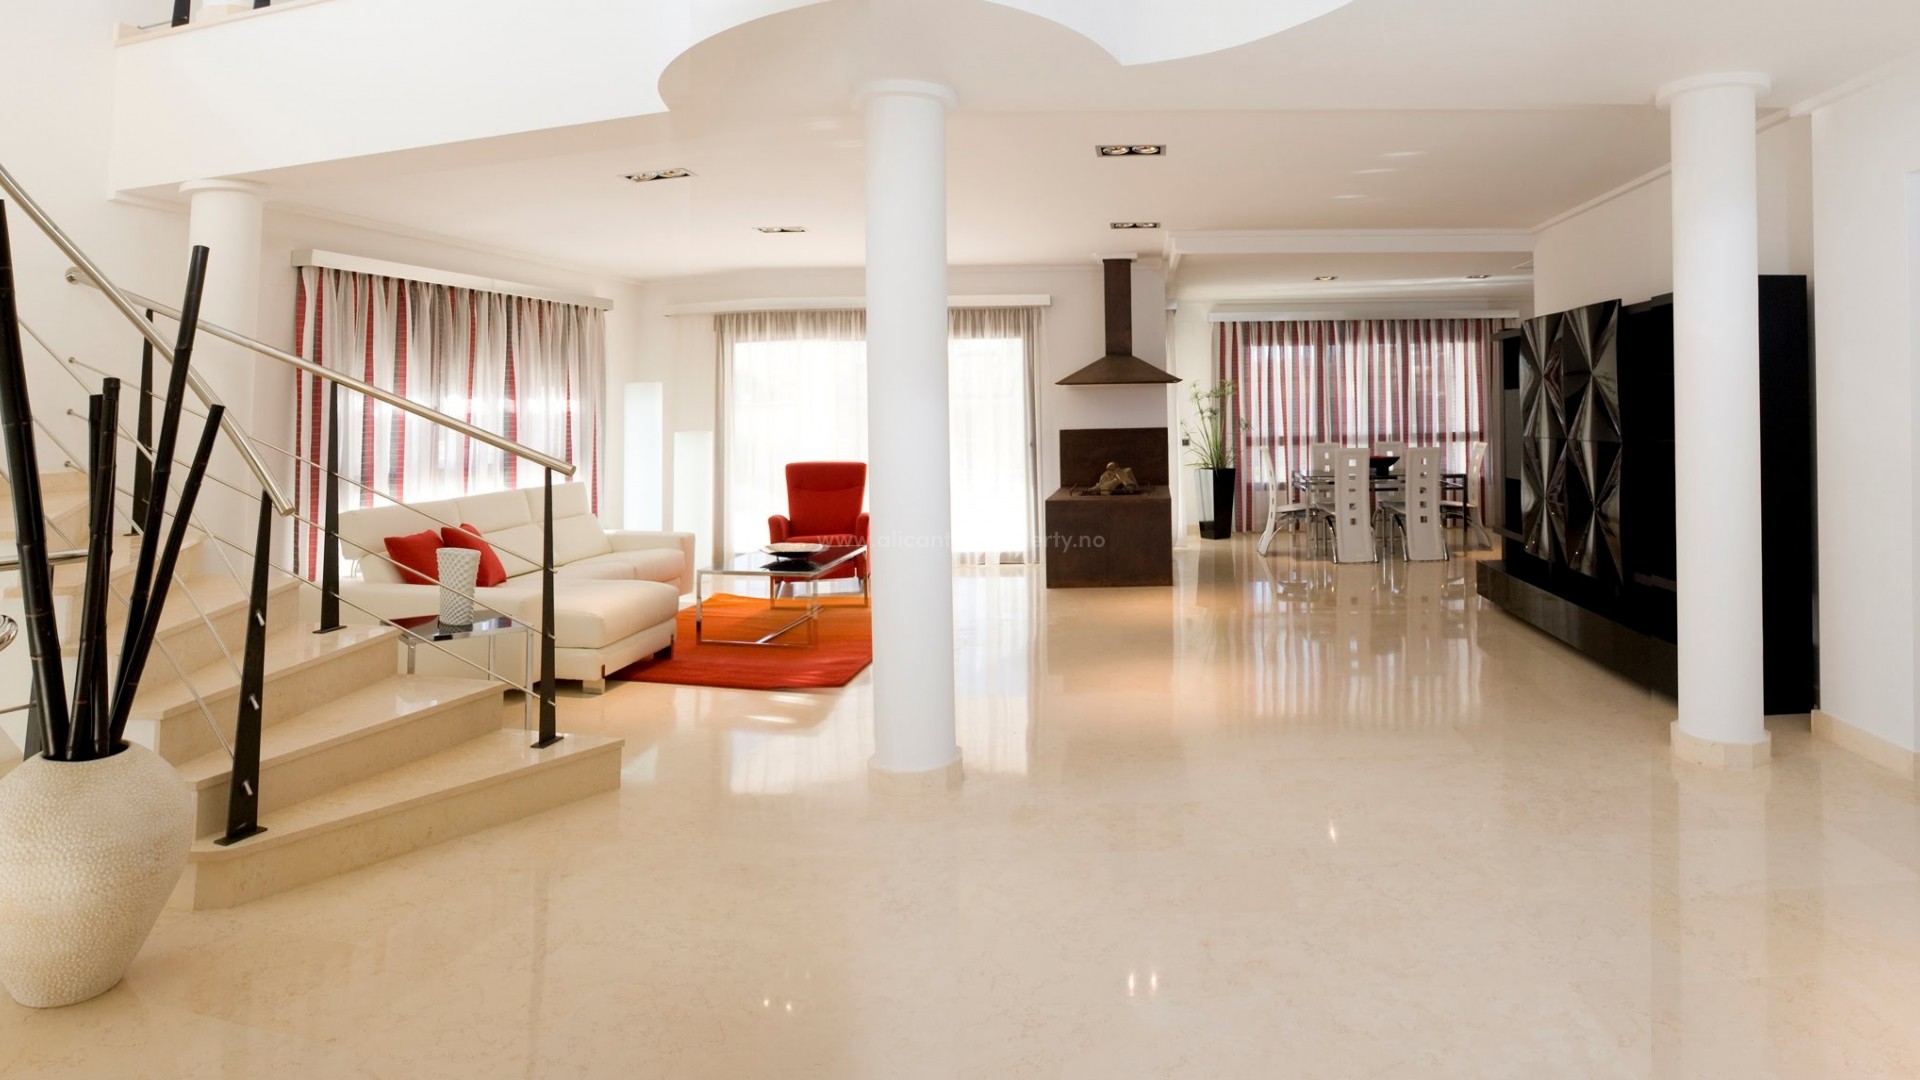 Luksus-eiendom med  villa/hus i Cabo Roig, Orihuela Costa,754 m2 og tomt på 1681m2 3 etasjer, 5 soverom, 7 bad, stor stue med peis, bar, badstue, lekeplass